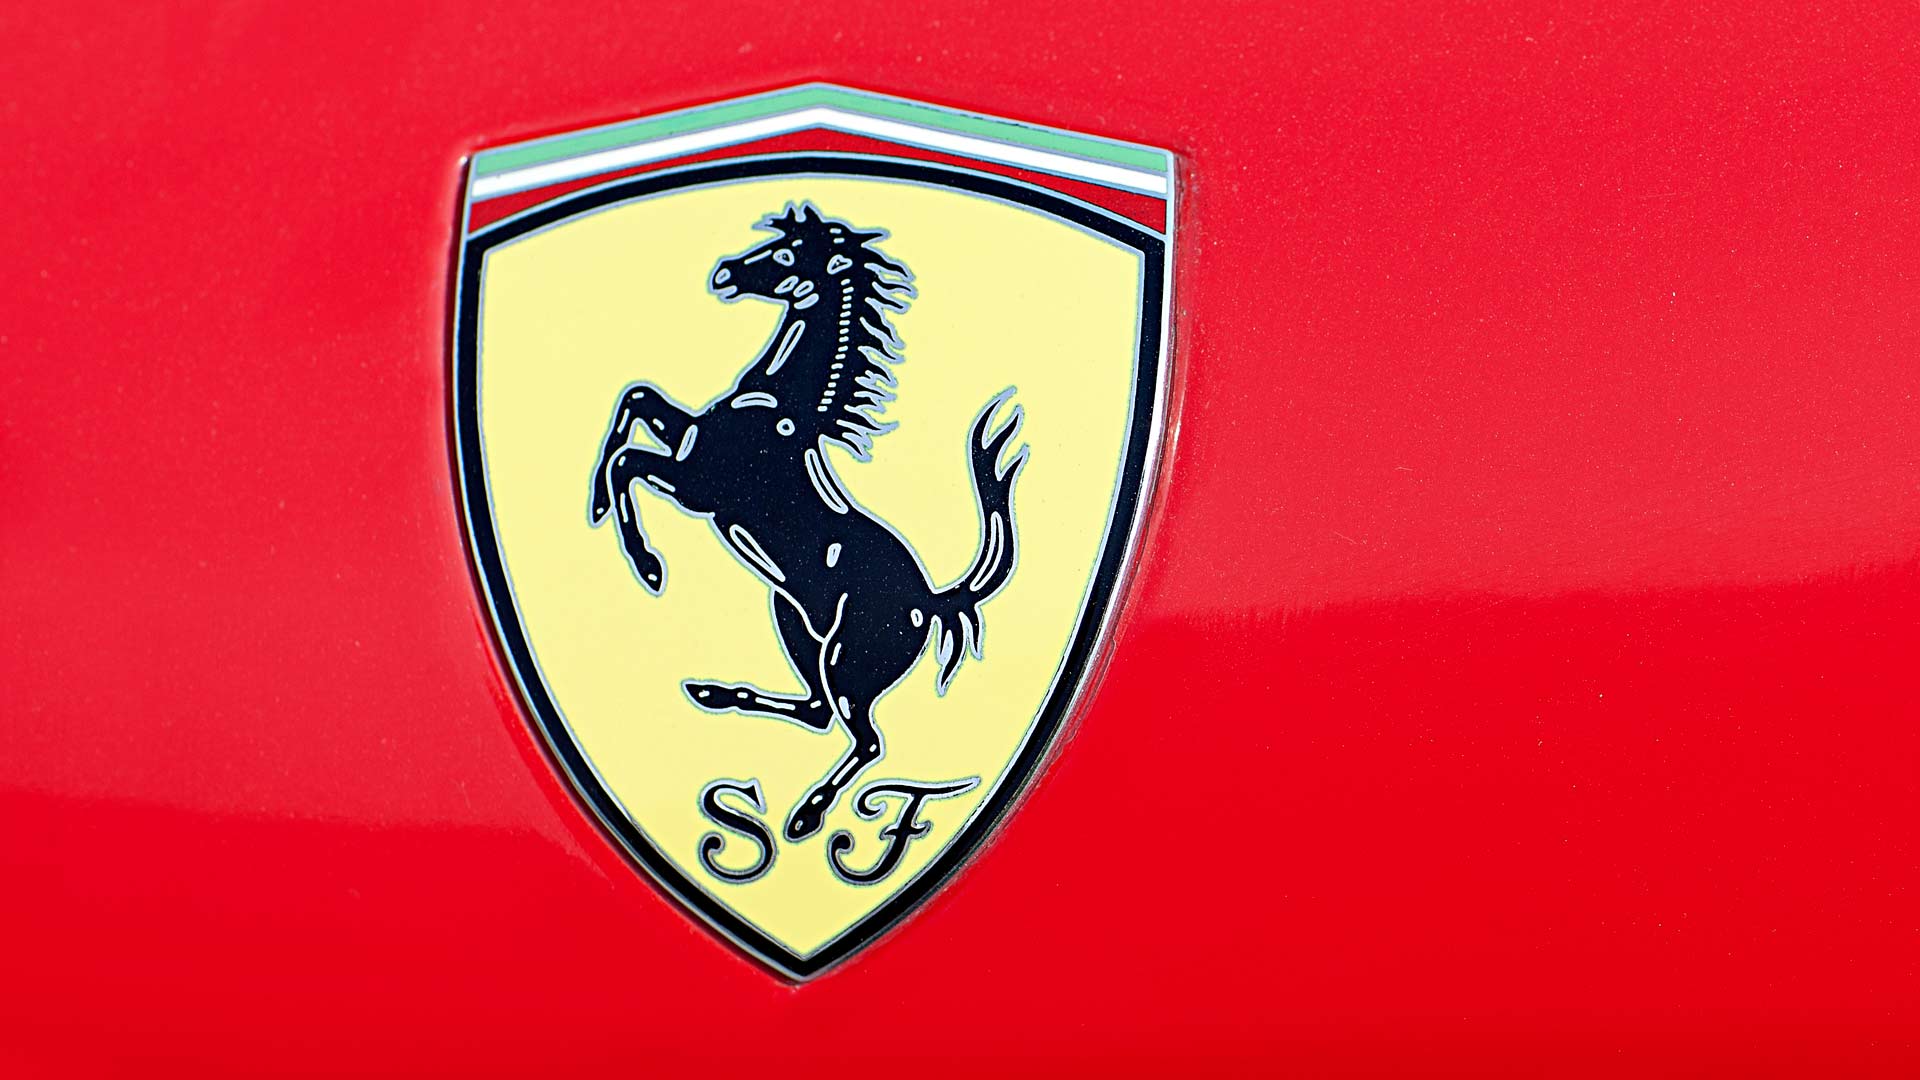 Ferrarin nykyinen hevoslogo.